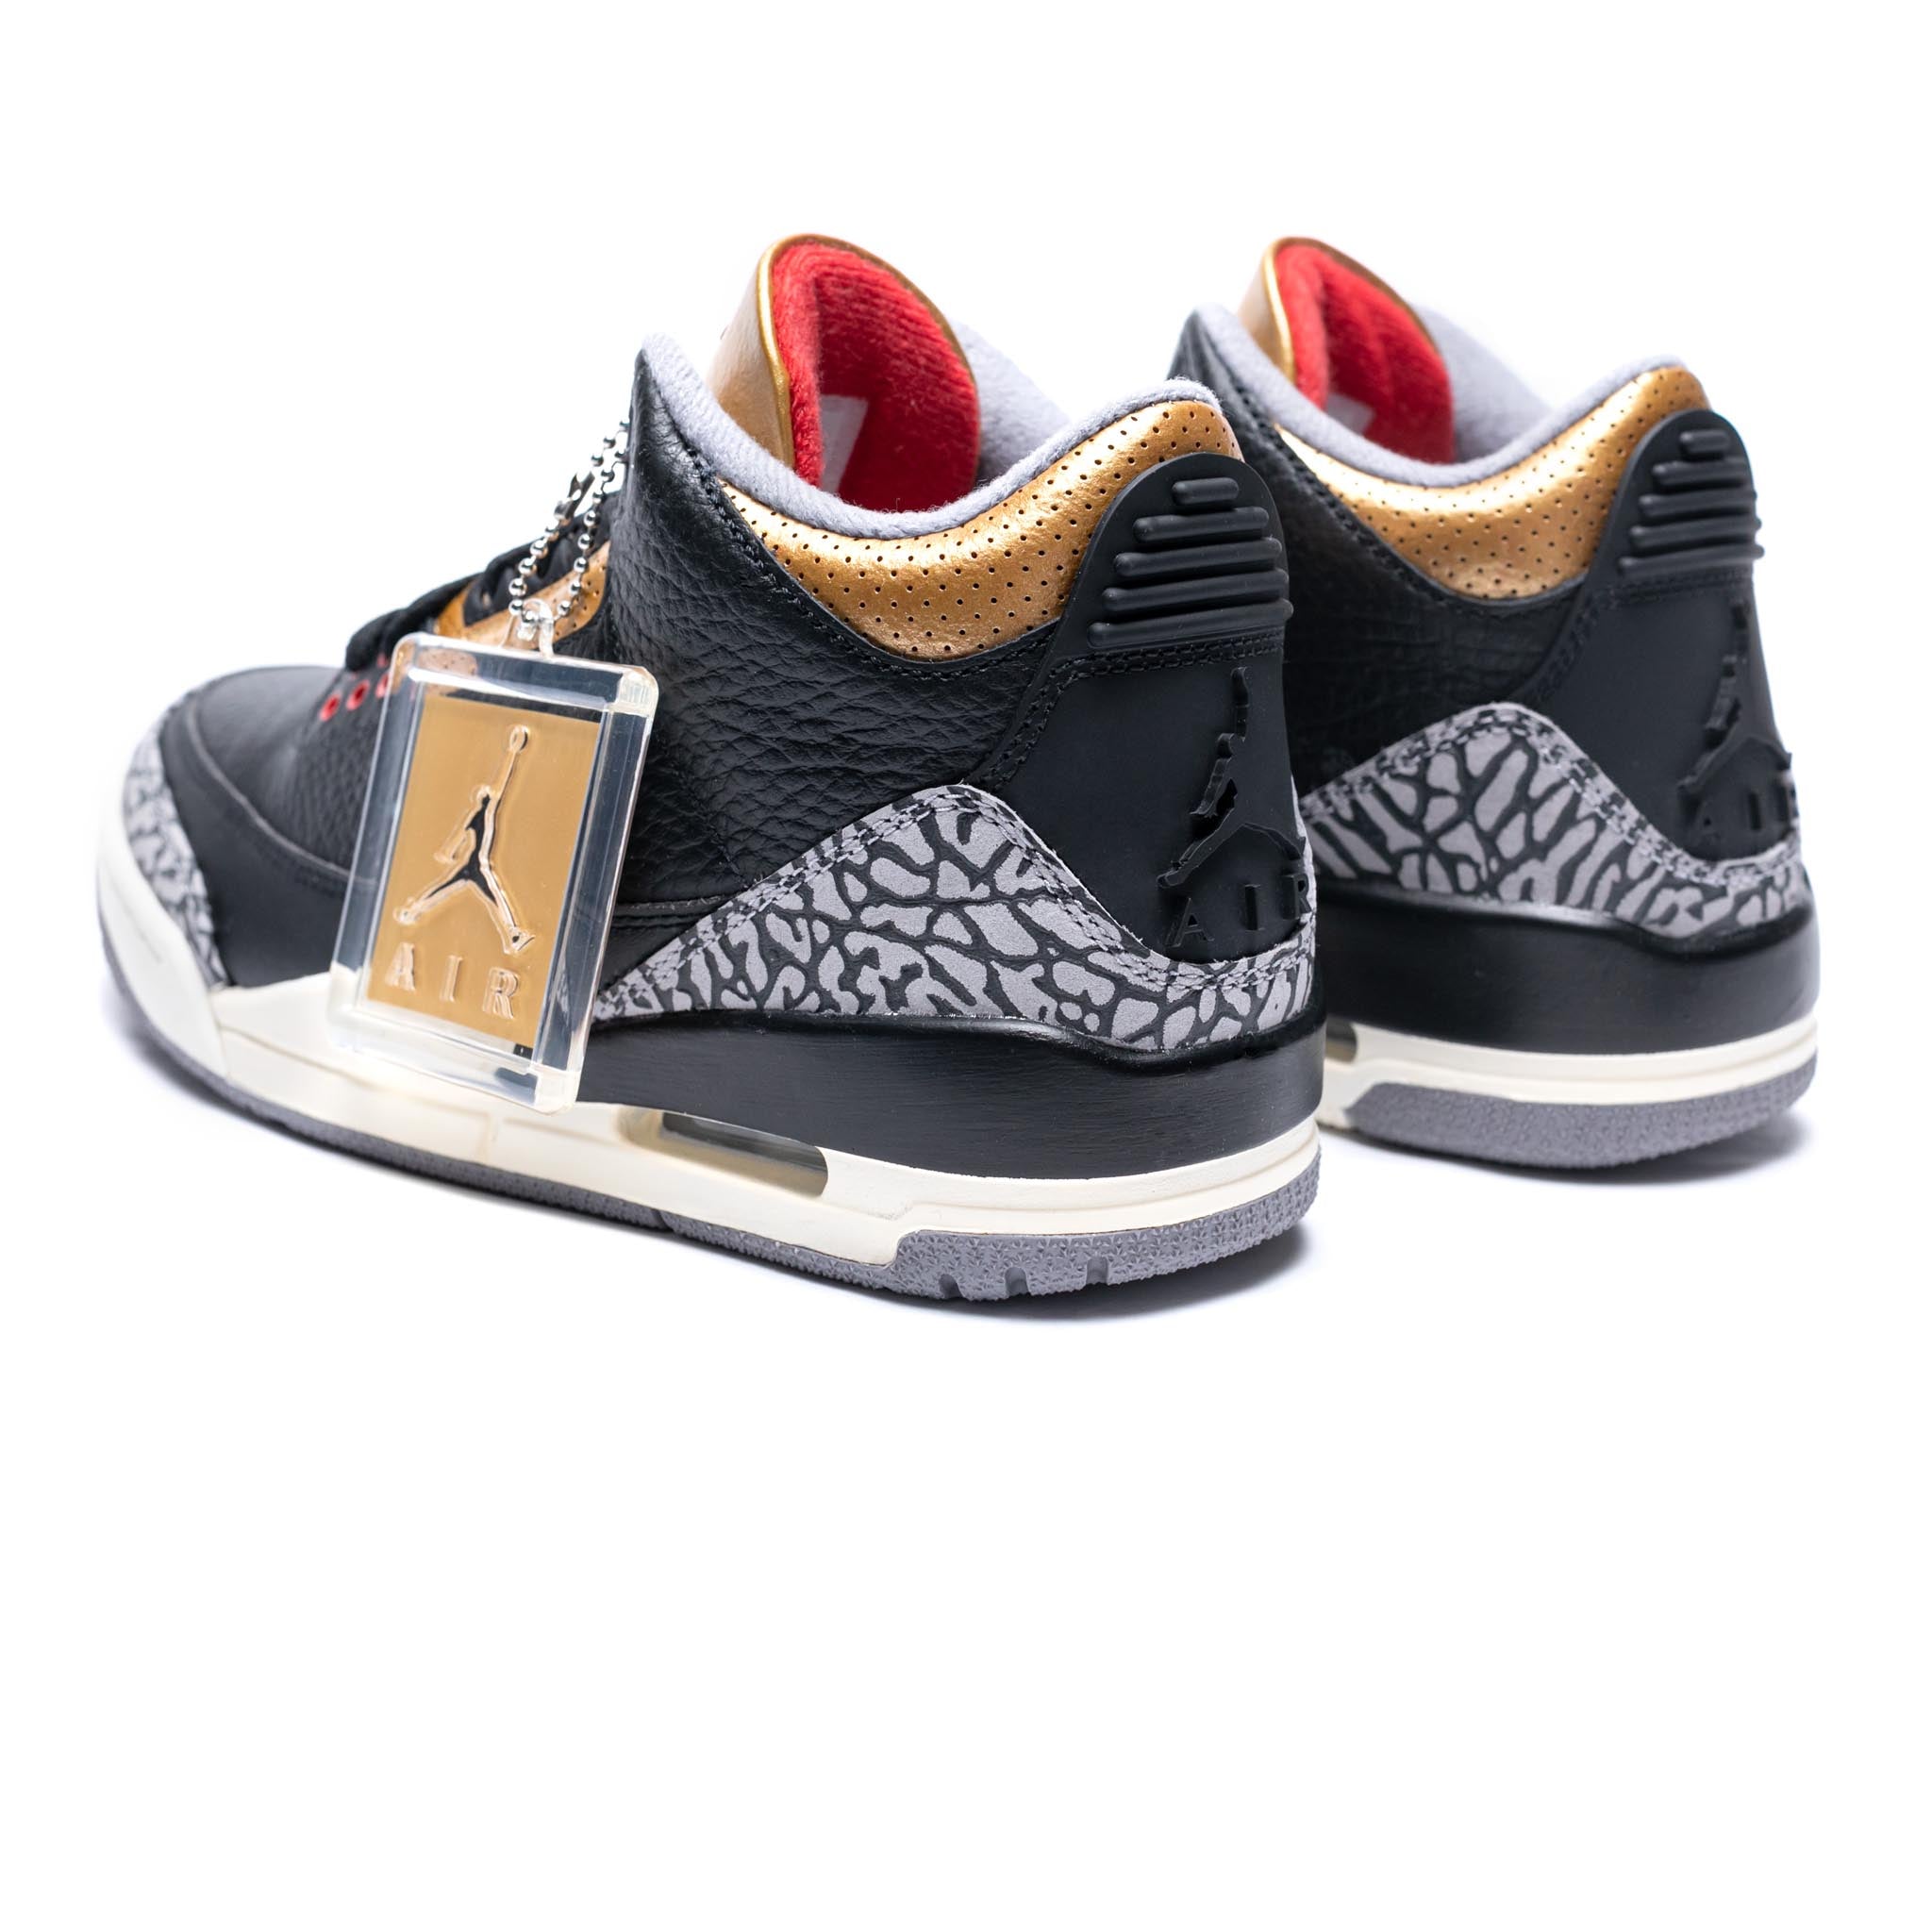 Air Jordan 3 Retro 閳ユイack Gold